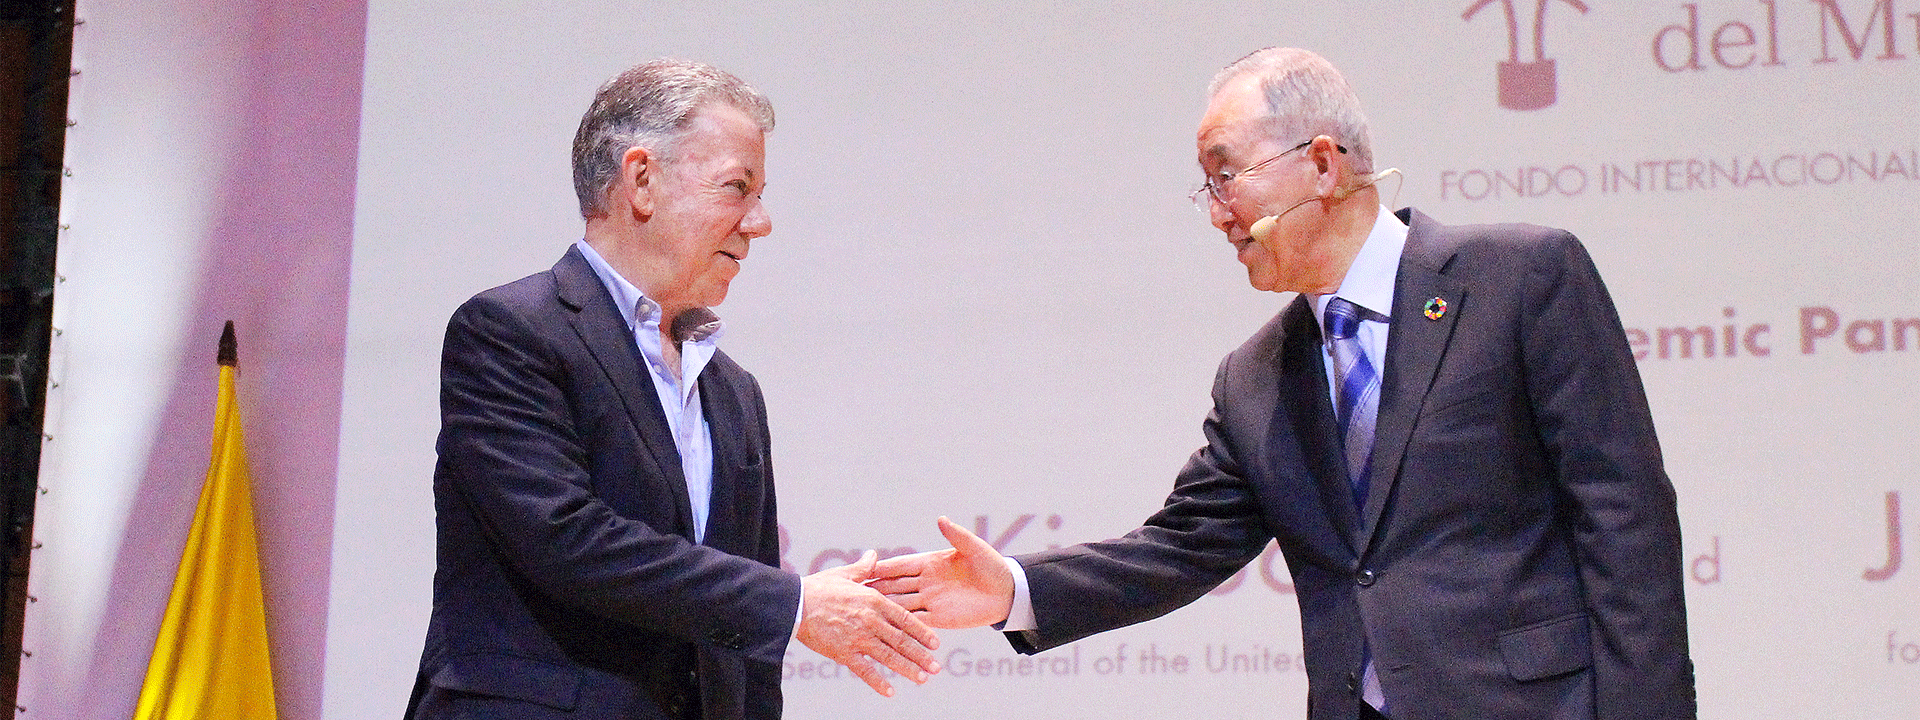 El saludo entre el ex presidente de Colombia y Ban Ki.